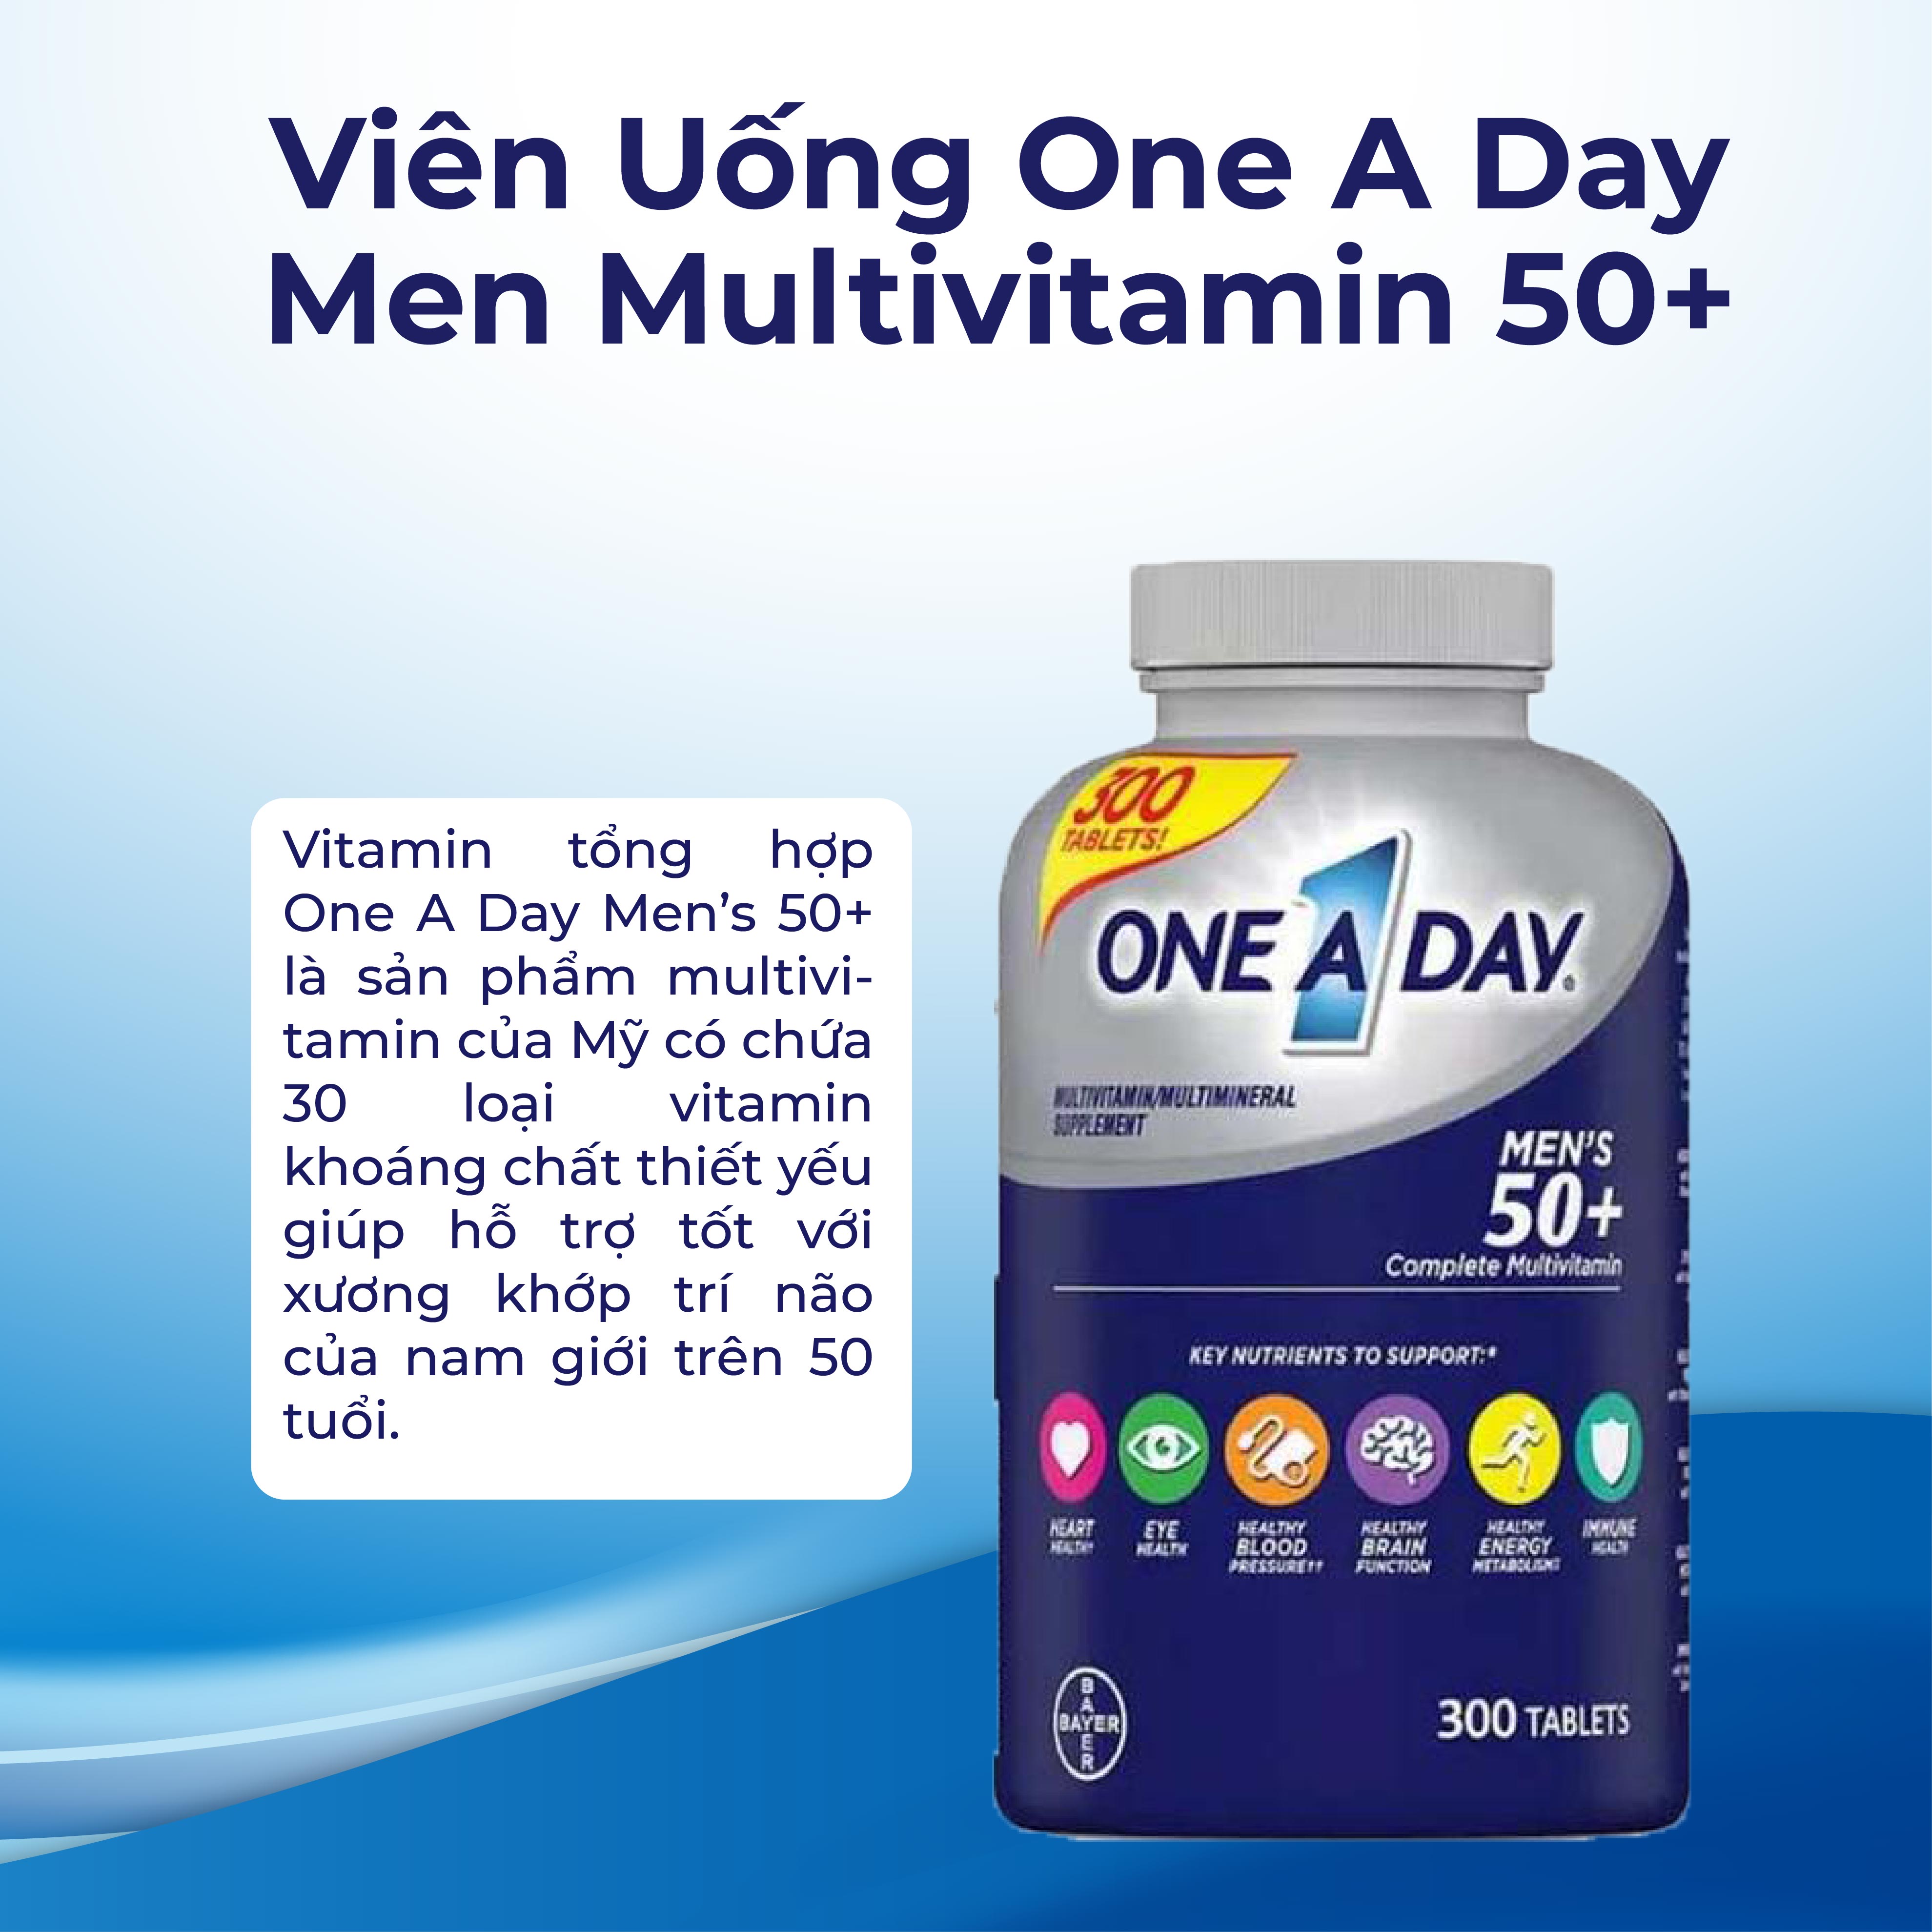 Vitamin tổng hợp Kirkland Signature One a day men s 50+ 300 Viên giúp cơ